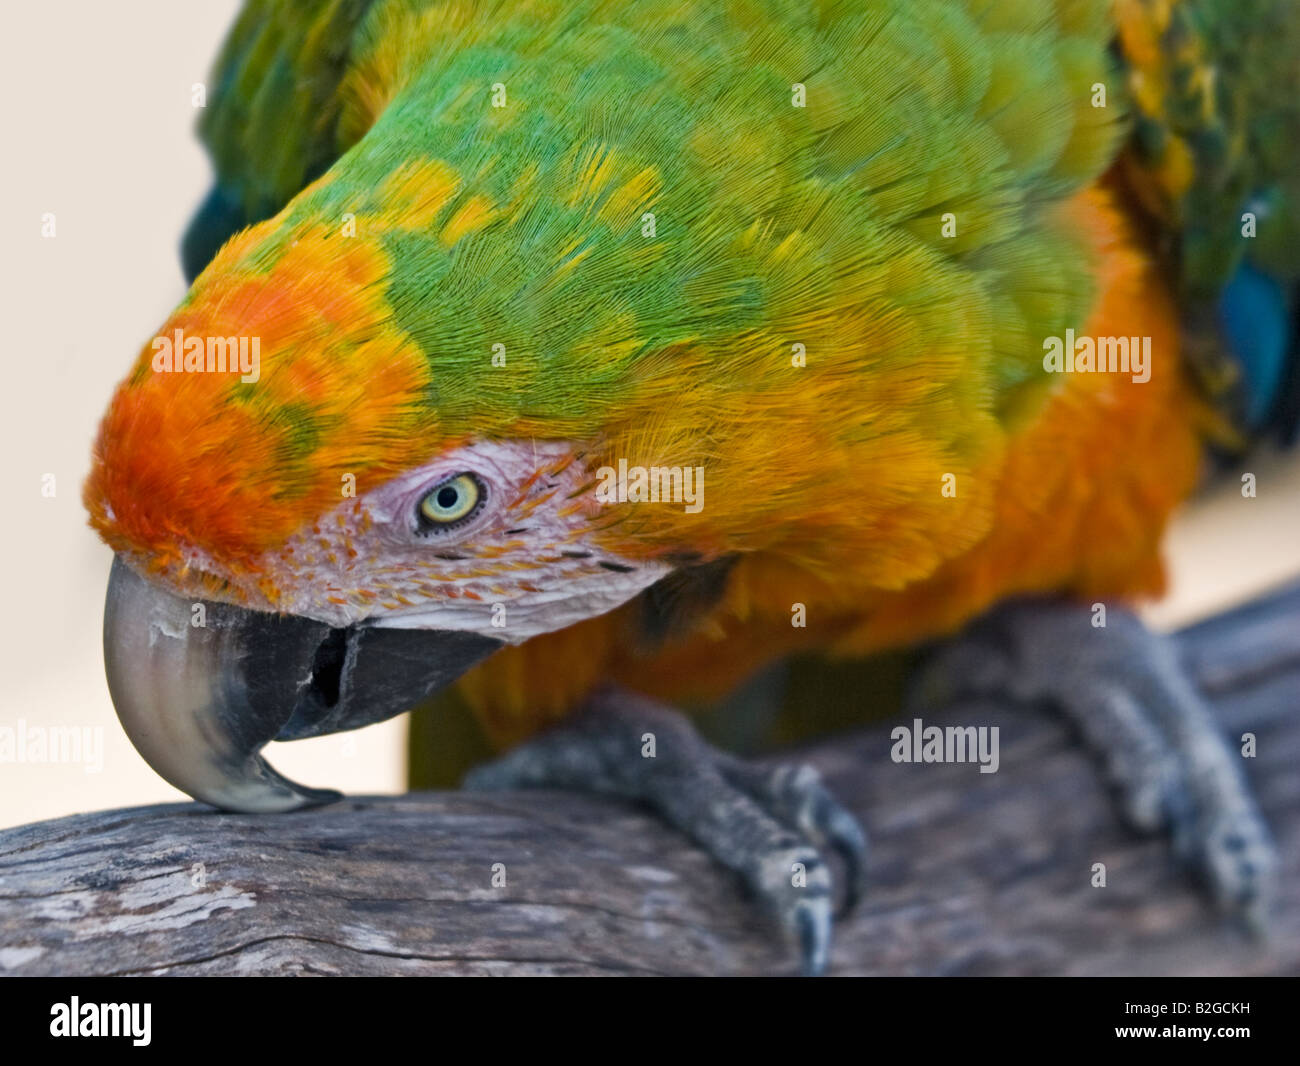 Harlequin Macaw (psittacidae) Stock Photo